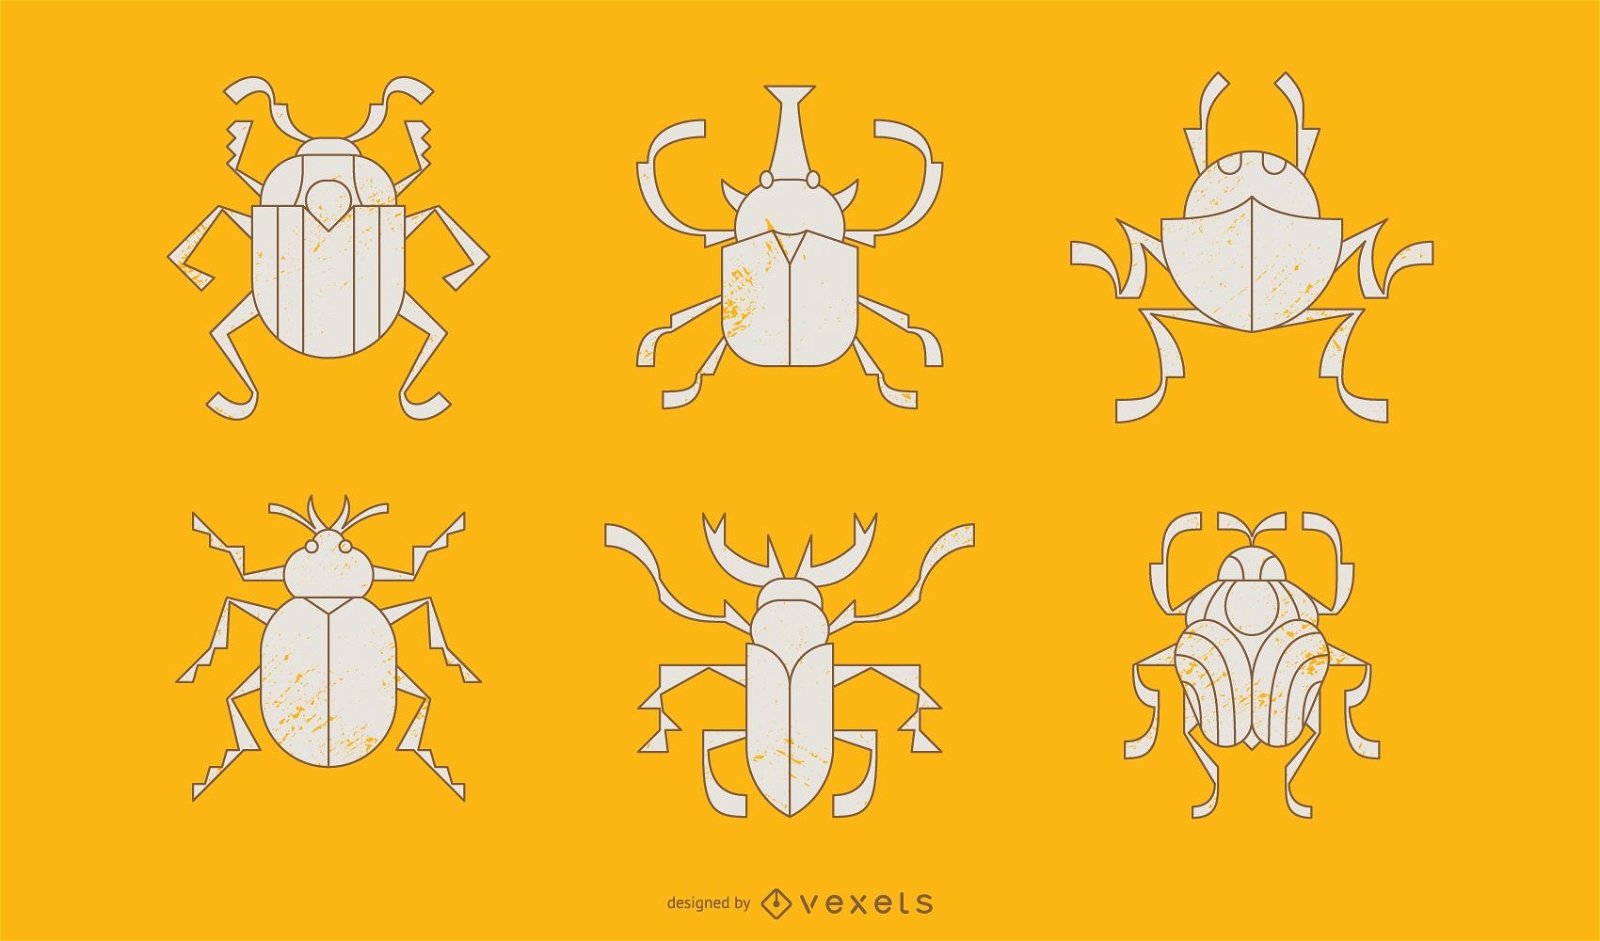 Käfer Geometric Style Illustration Pack